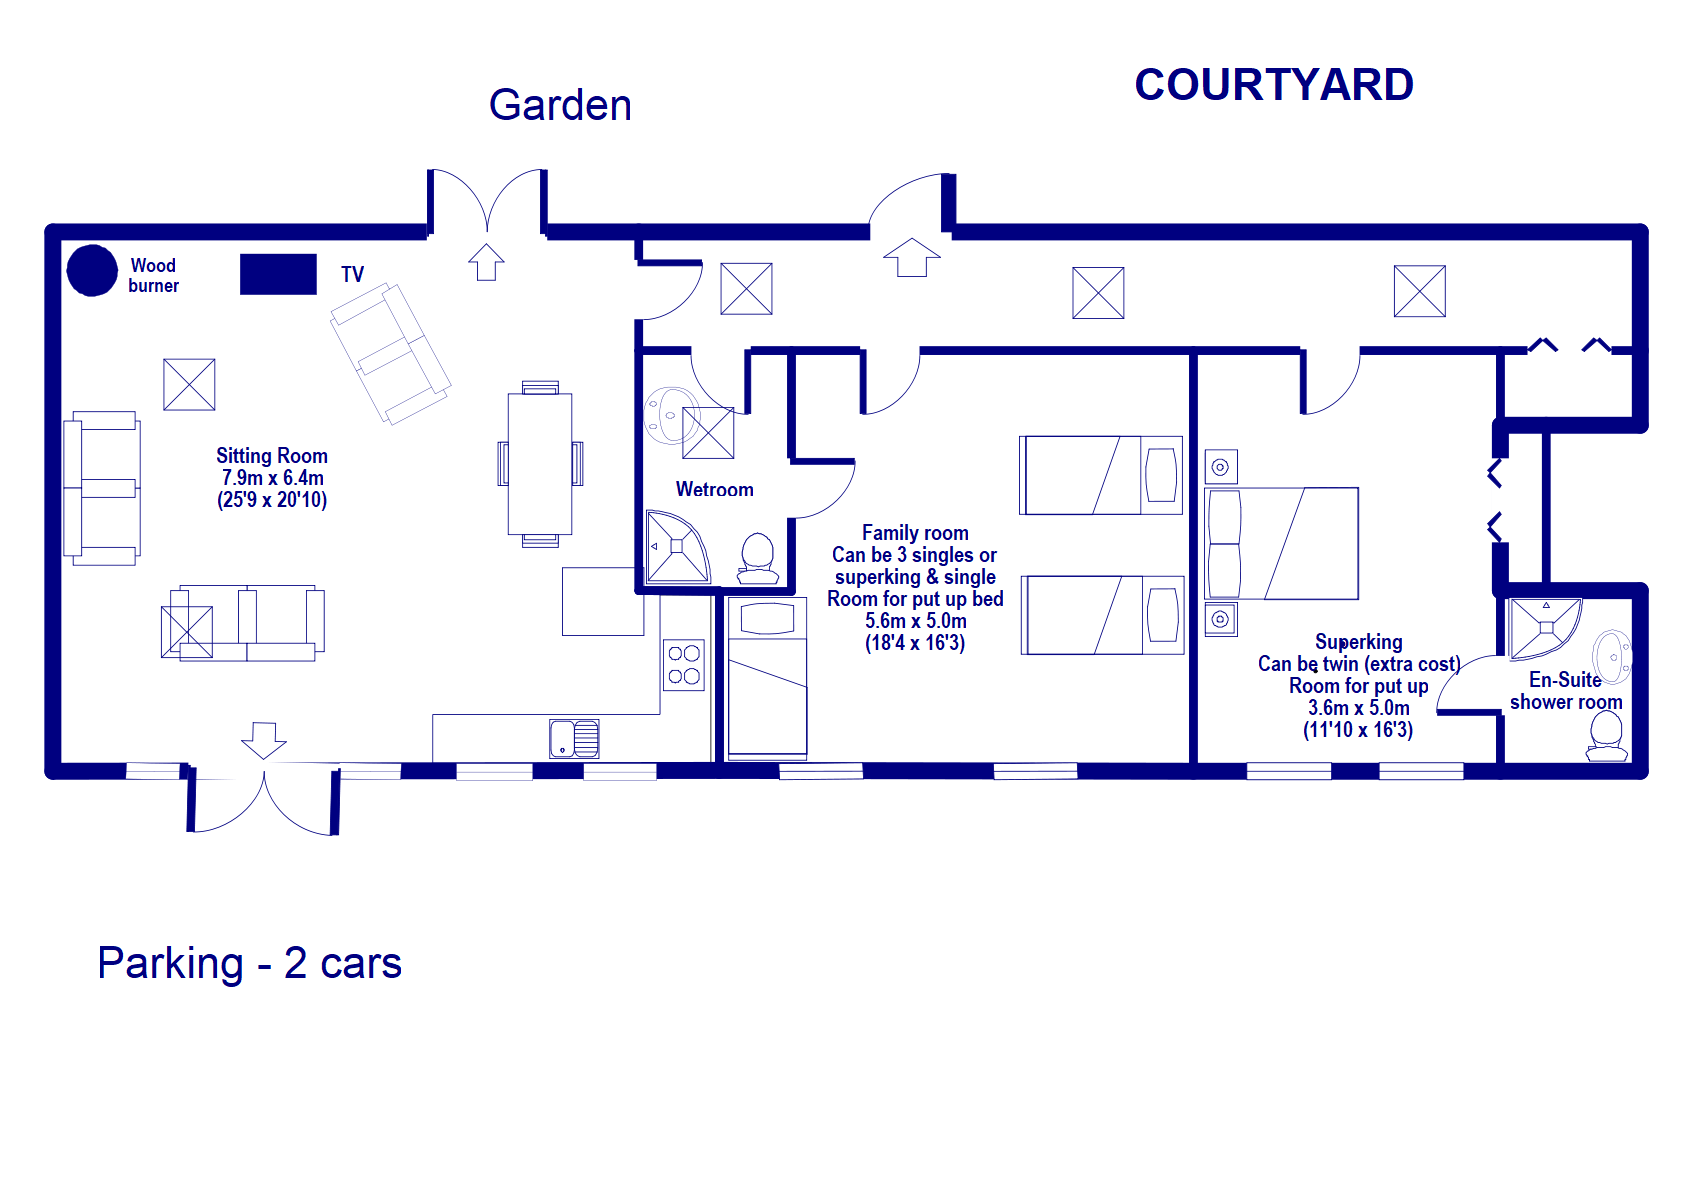 Courtyard floor plan